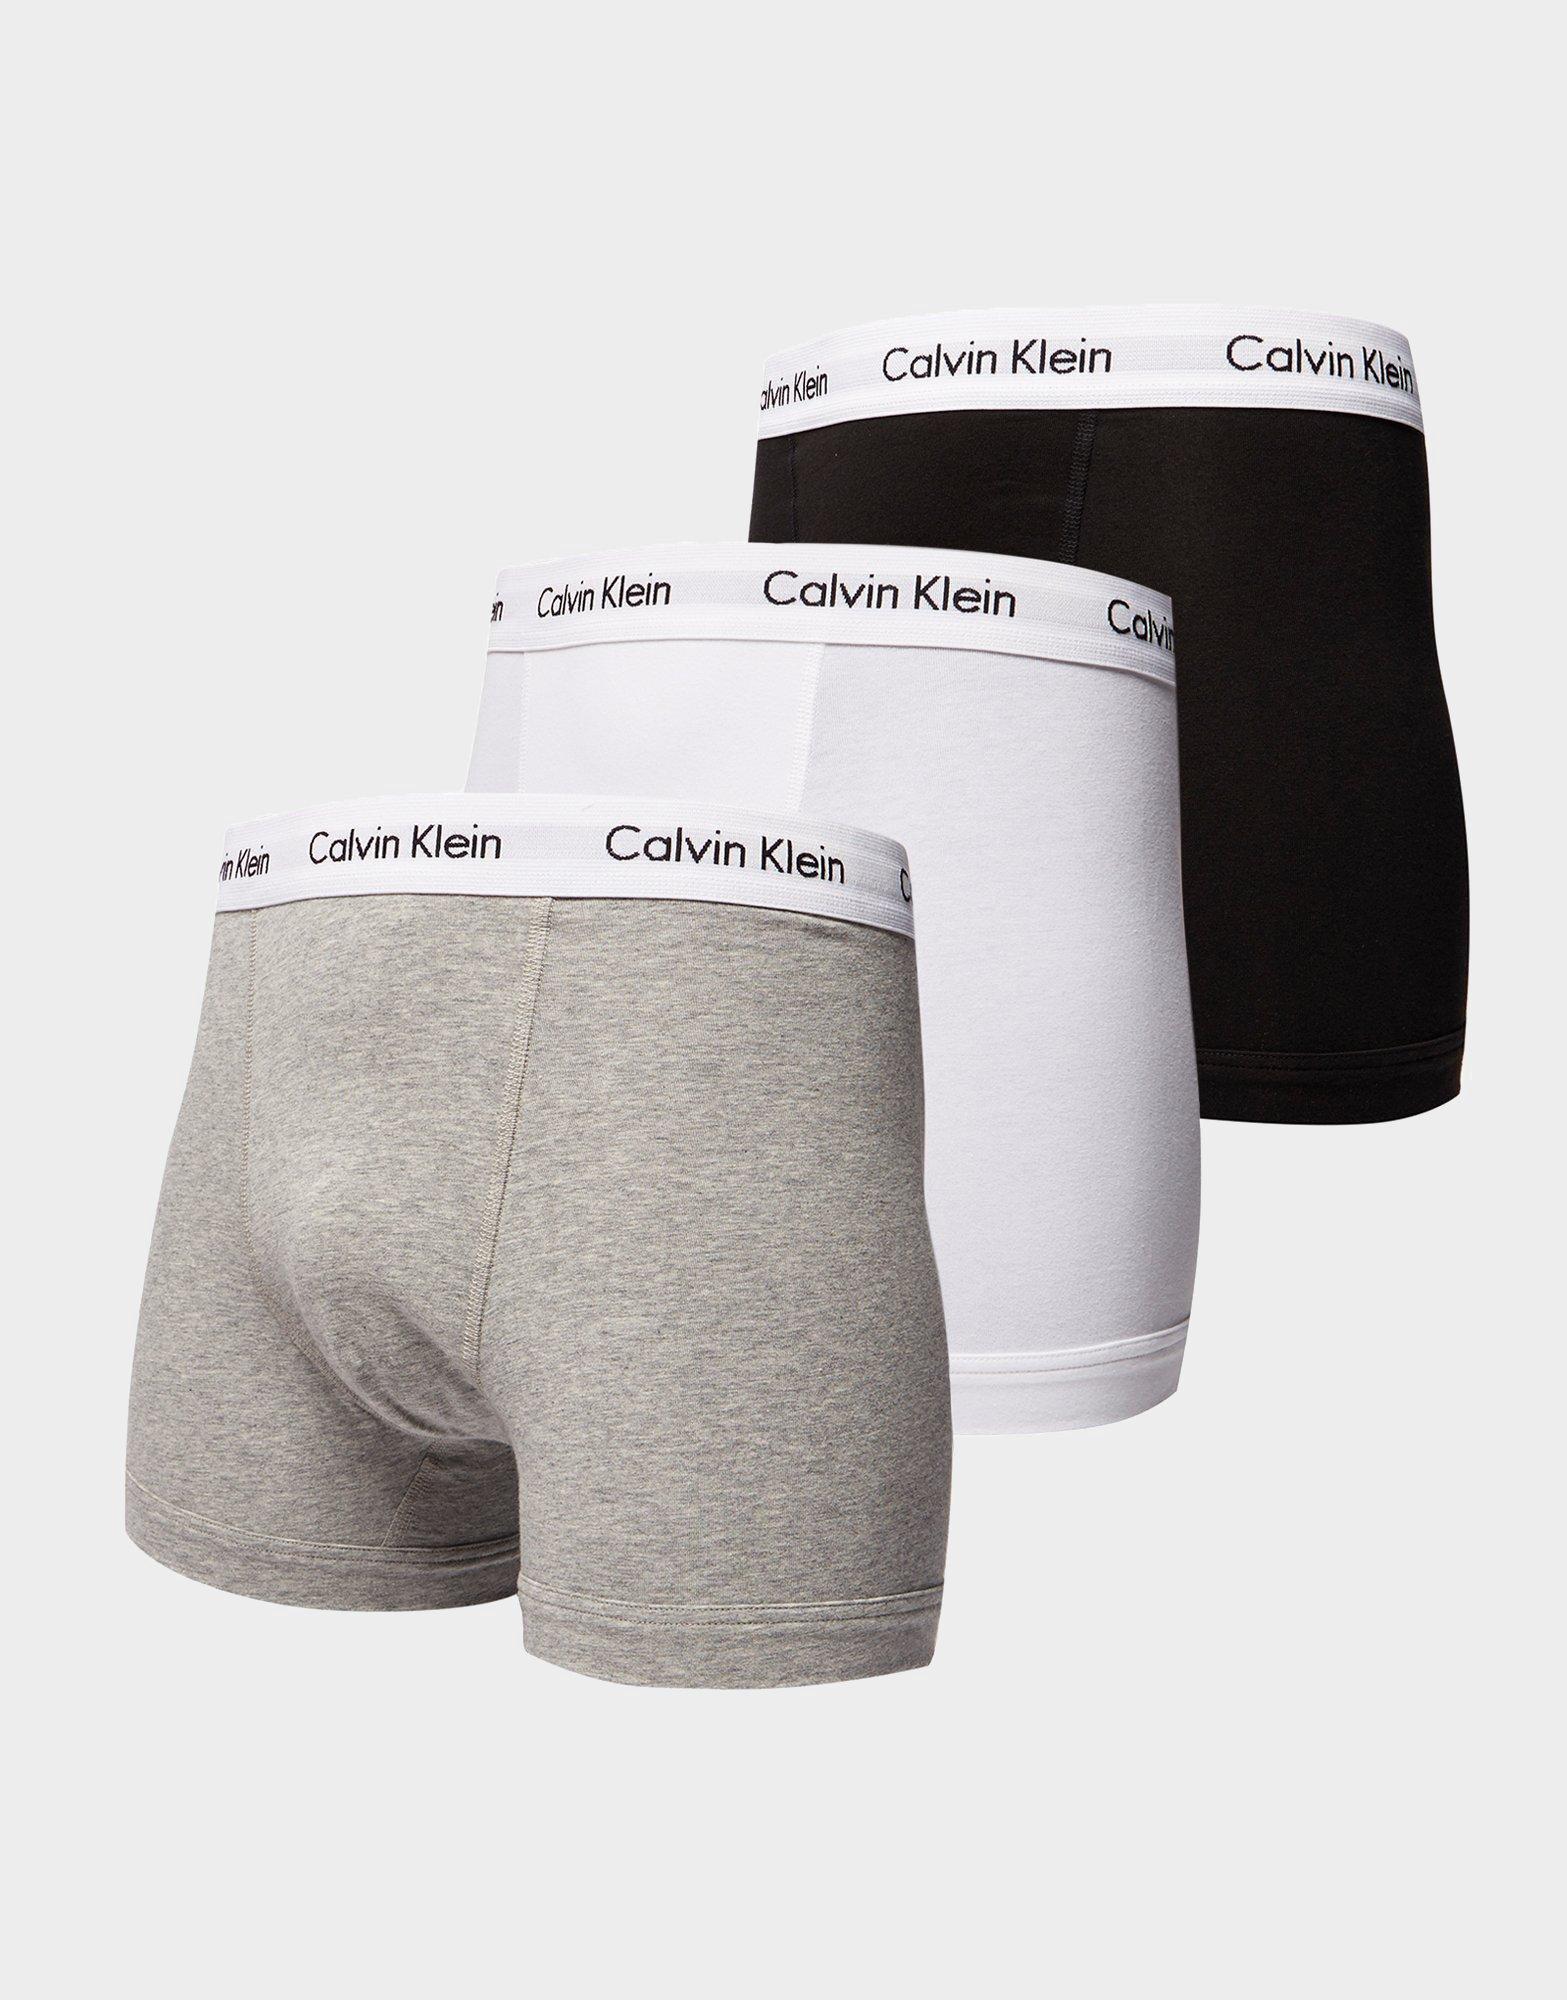 new calvin klein boxers